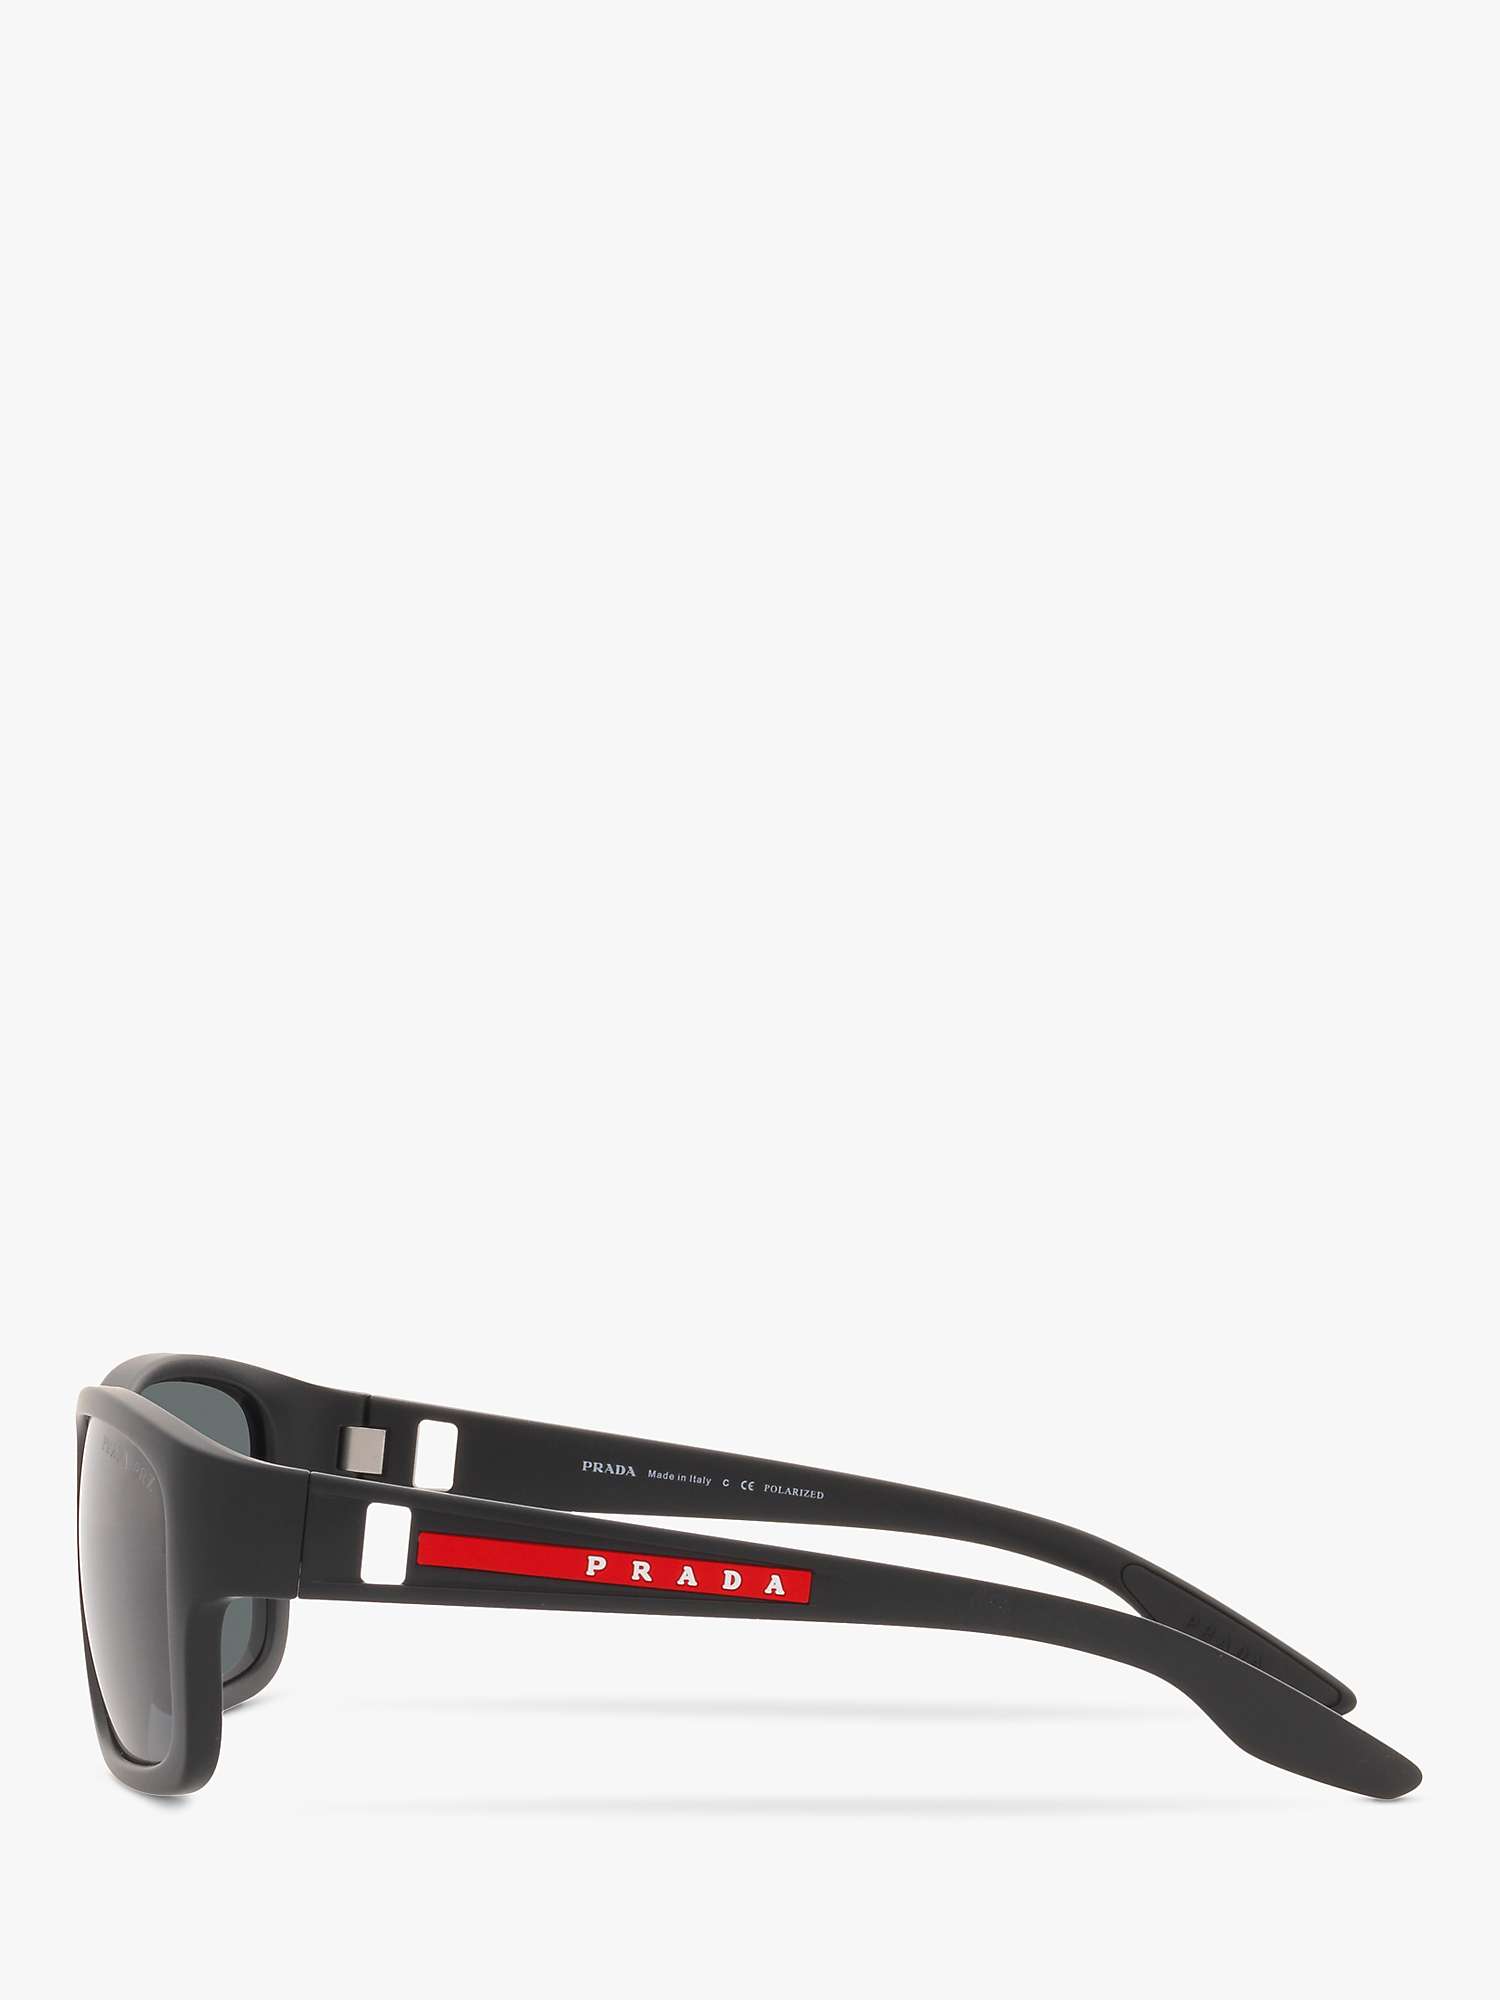 Buy Prada Linea Rossa PS 01WS Men's Pillow Polarised Sunglasses Online at johnlewis.com